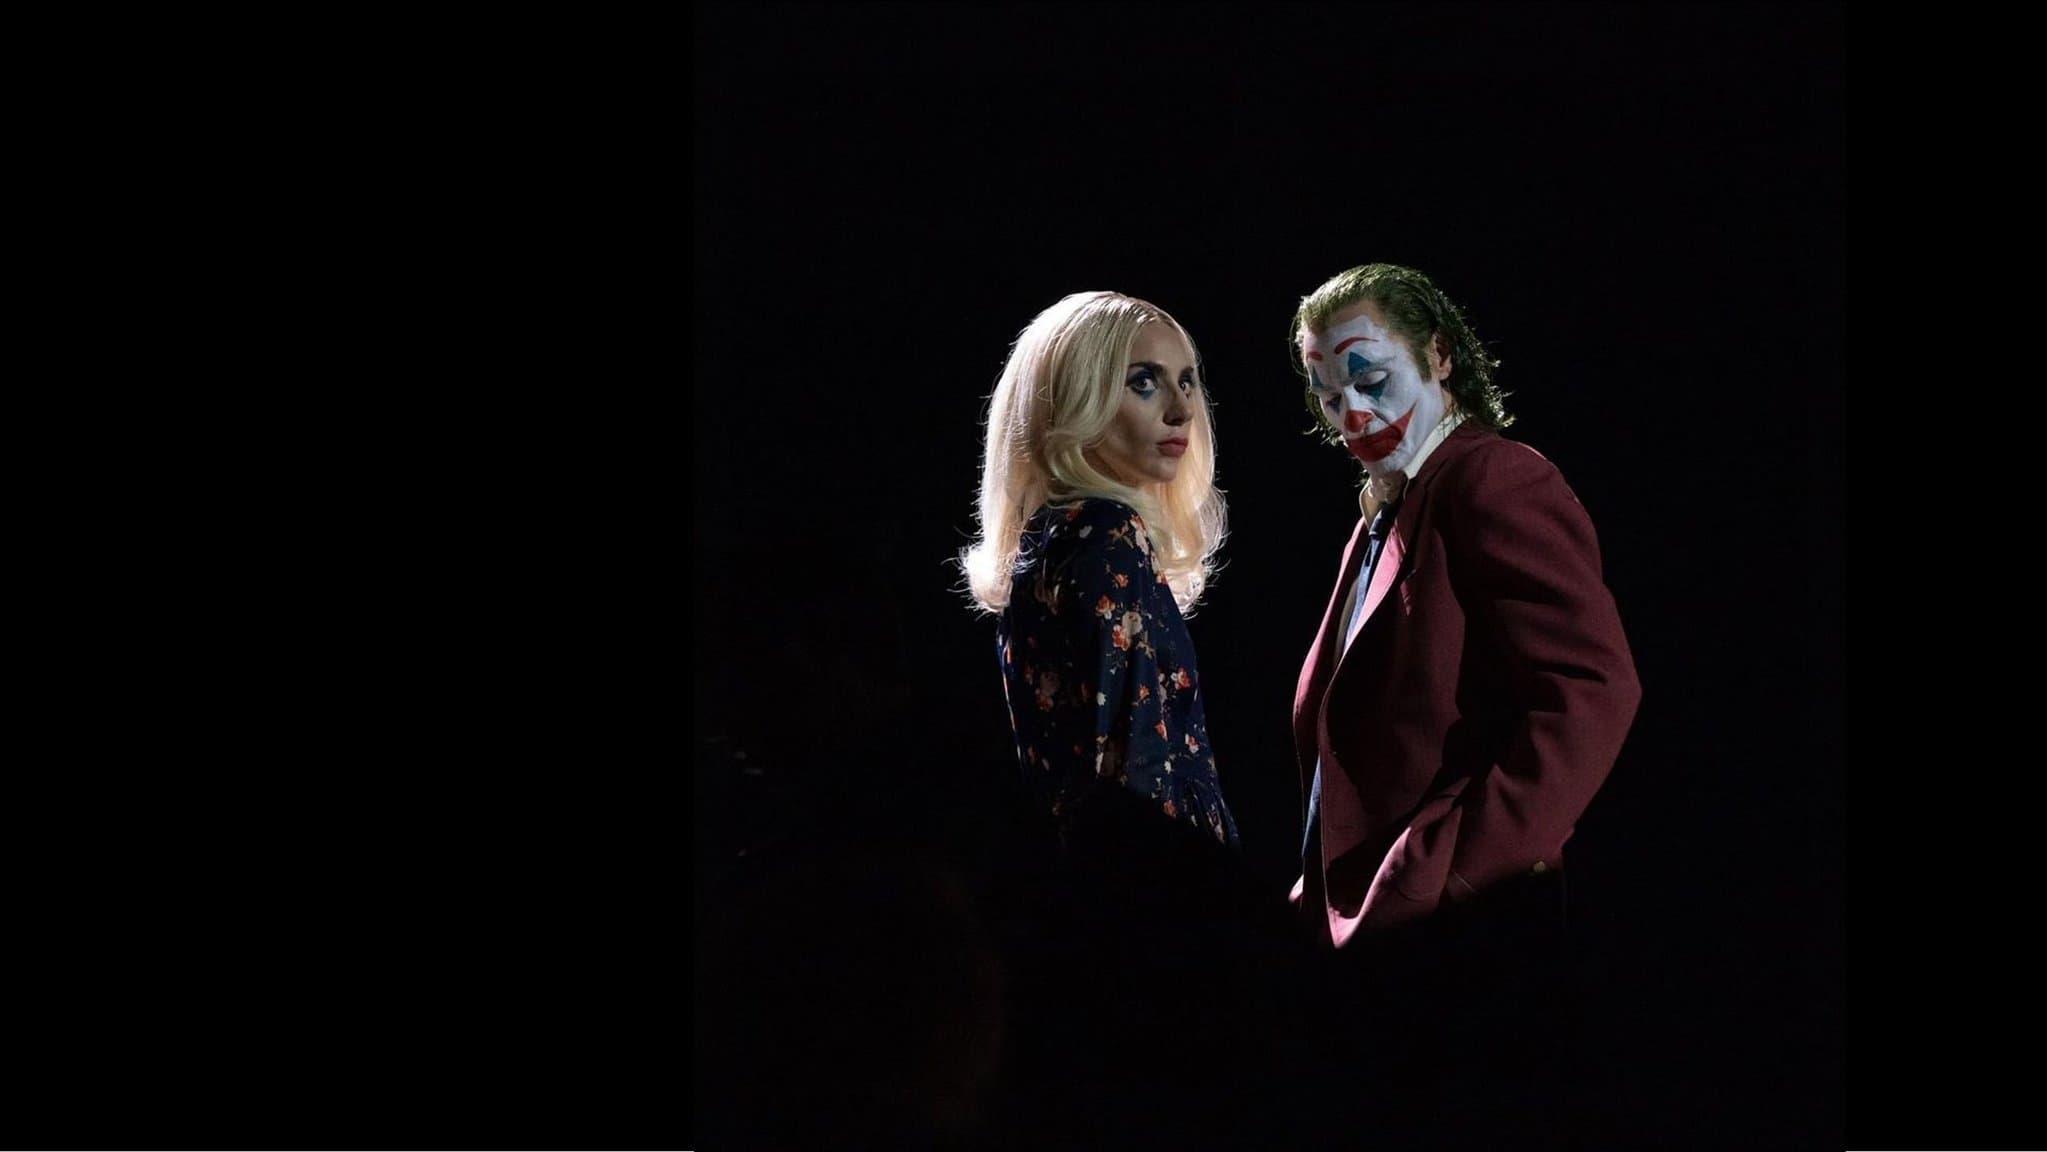 Joker: Folie à Deux backdrop